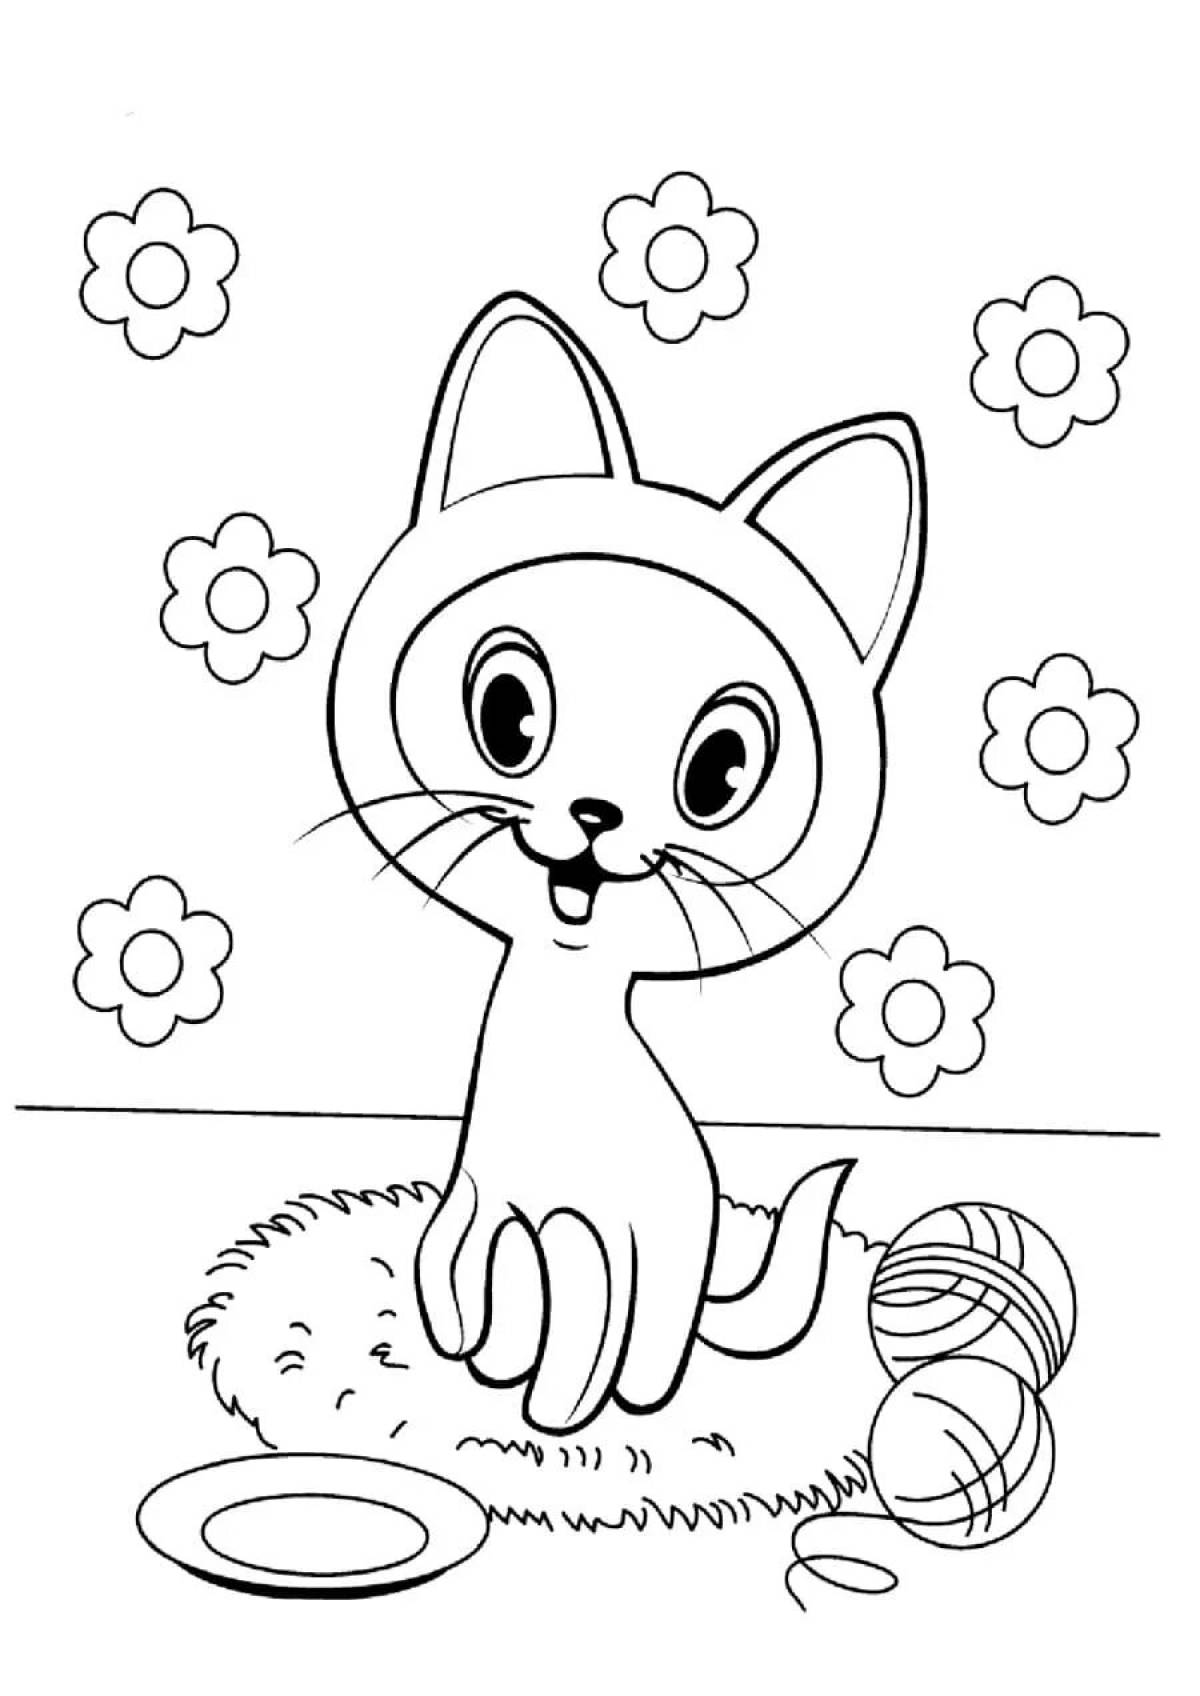 Раскраска zany kittens для детей 6-7 лет